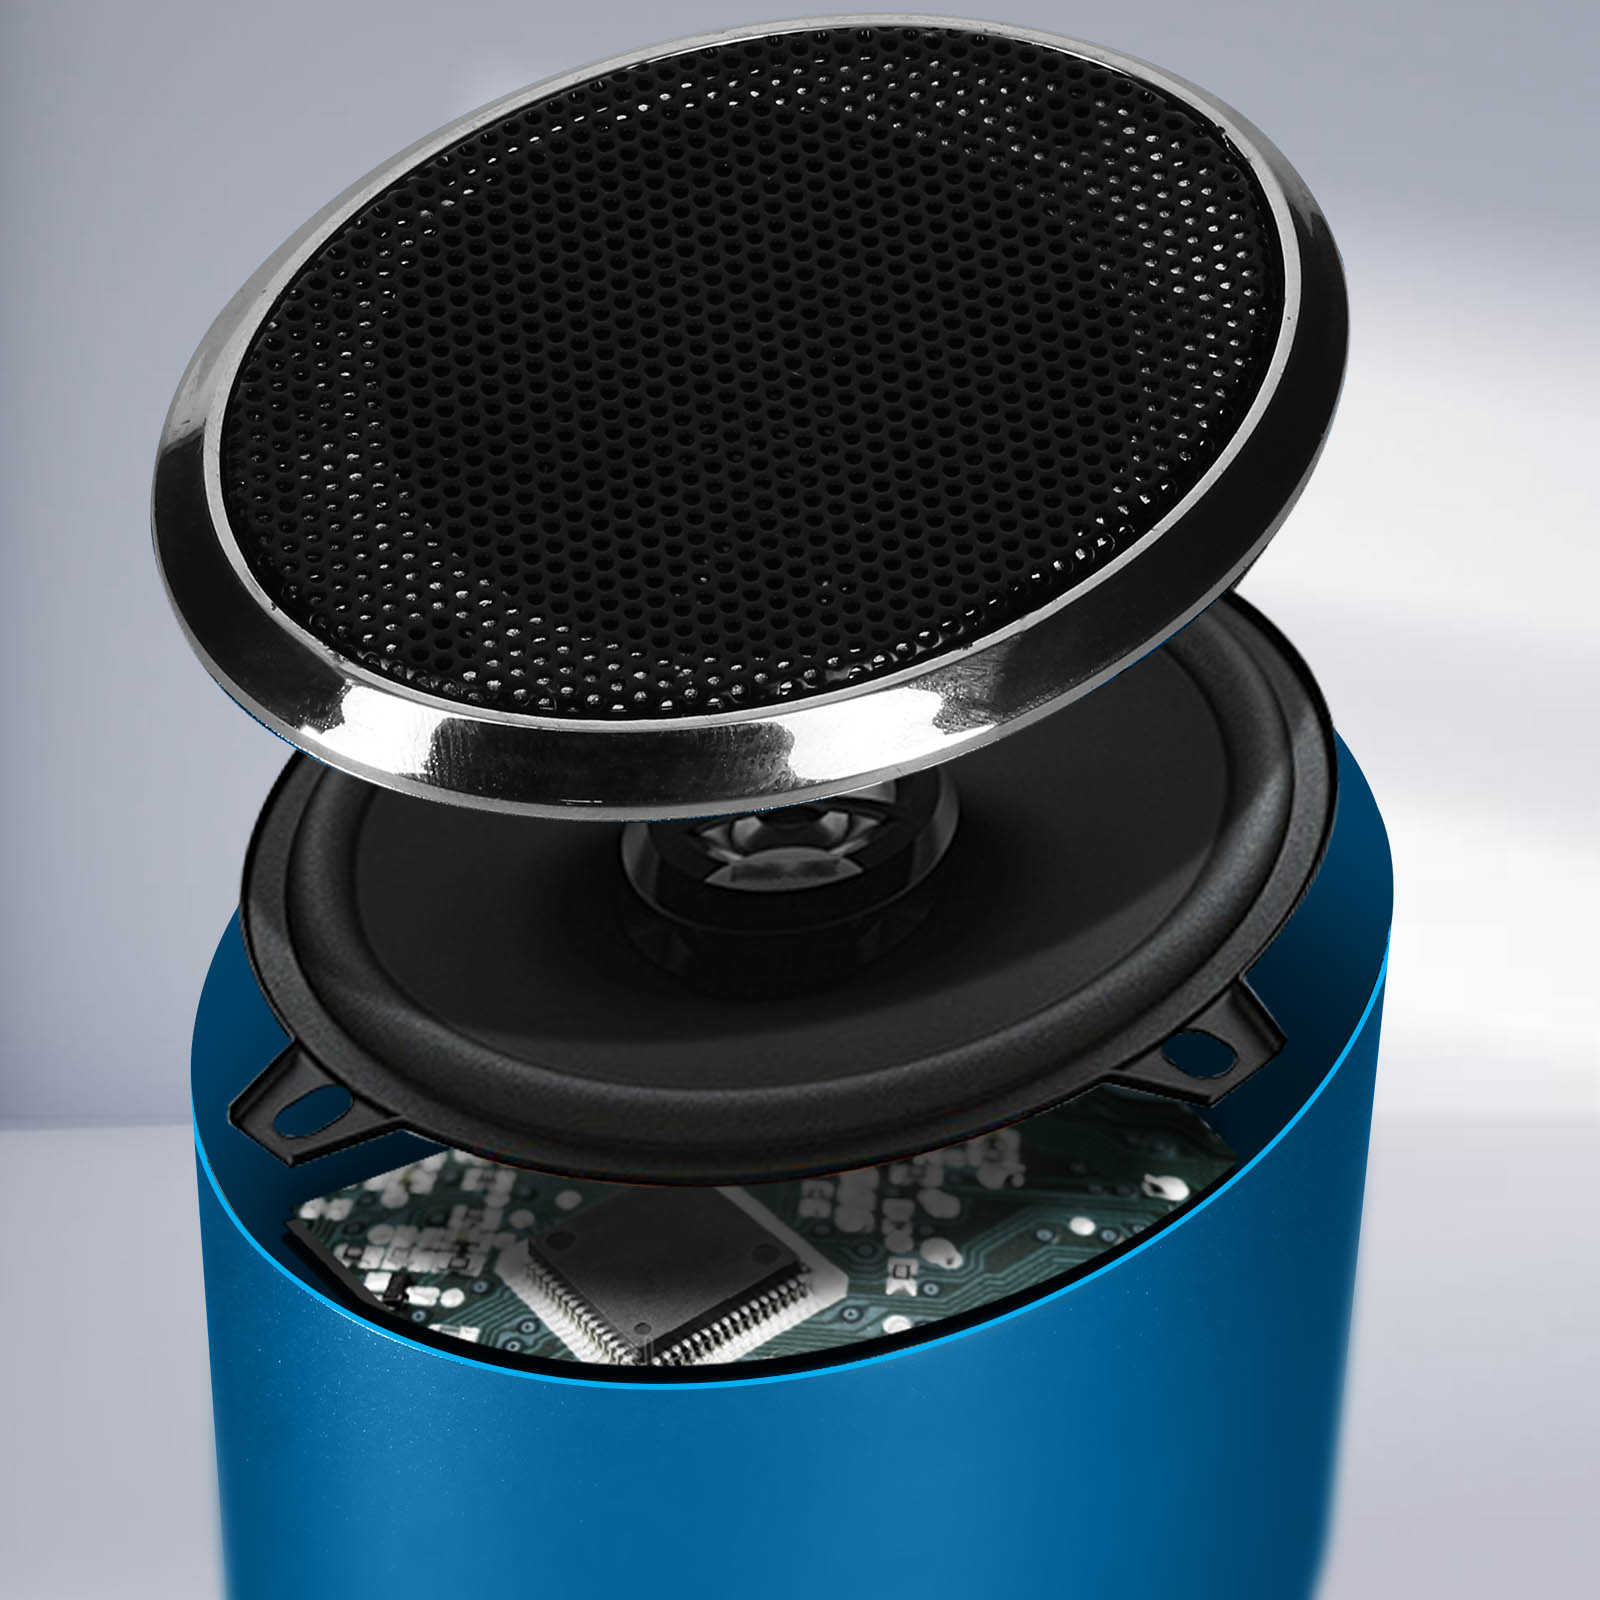 Mini Enceinte Bluetooth Venus avec Bass Puissante, Métallisé